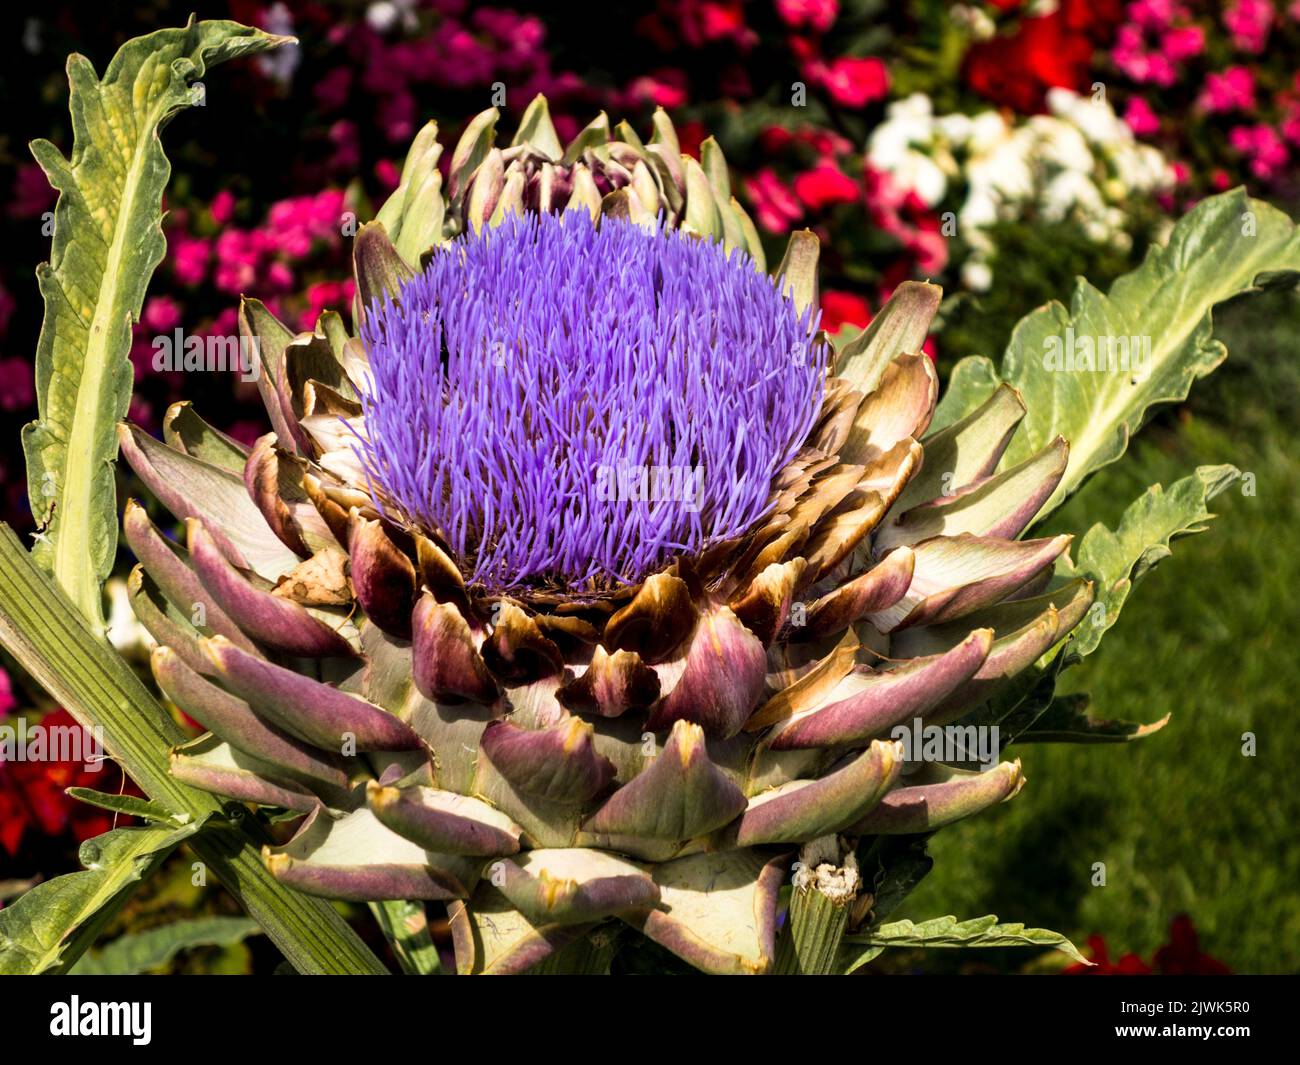 Artichoke flower Stock Photo